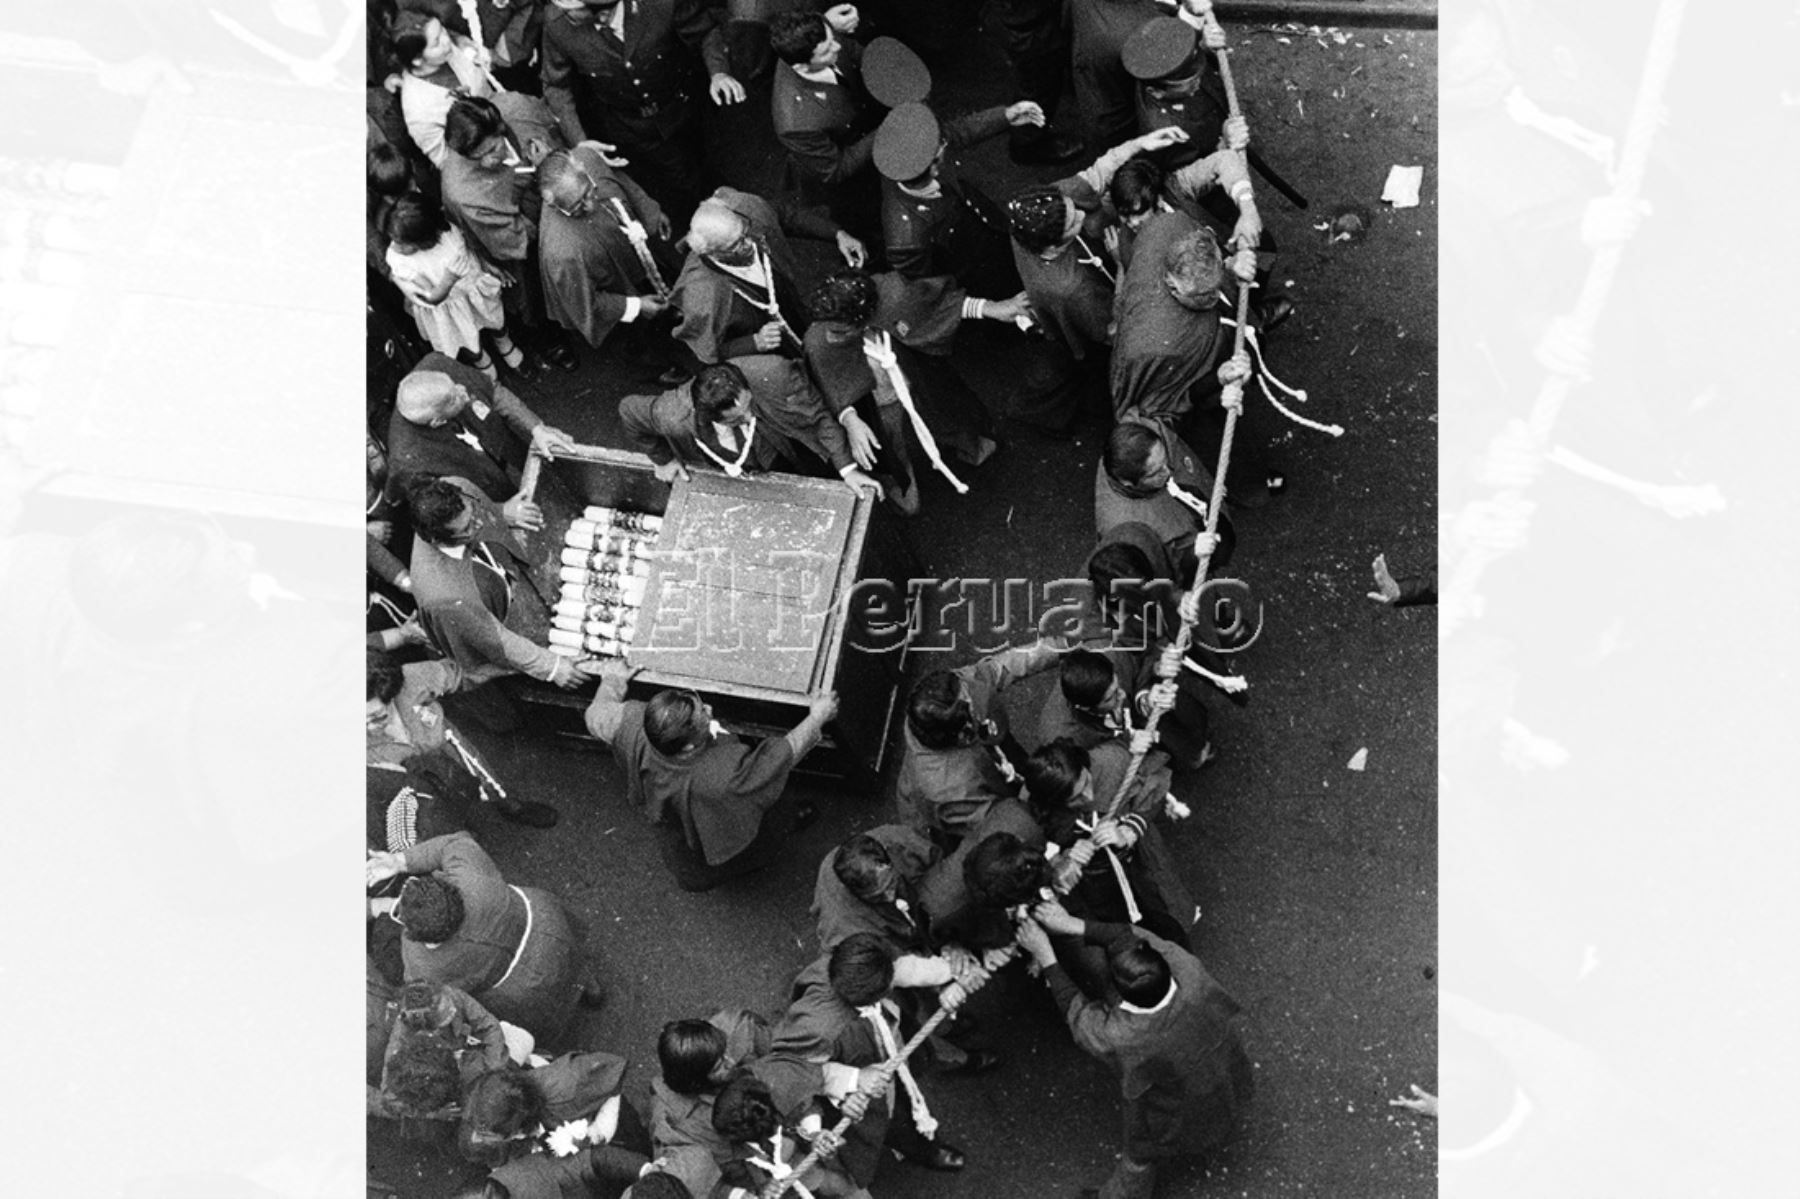 Lima - 18 octubre 1976. Un grupo de hombres de la hermandad del Señor de los Milagros sujeta la cuerda de seguridad de la sagrada imagen en procesión. Foto: Archivo Histórico El Peruano / Rolando Ángeles